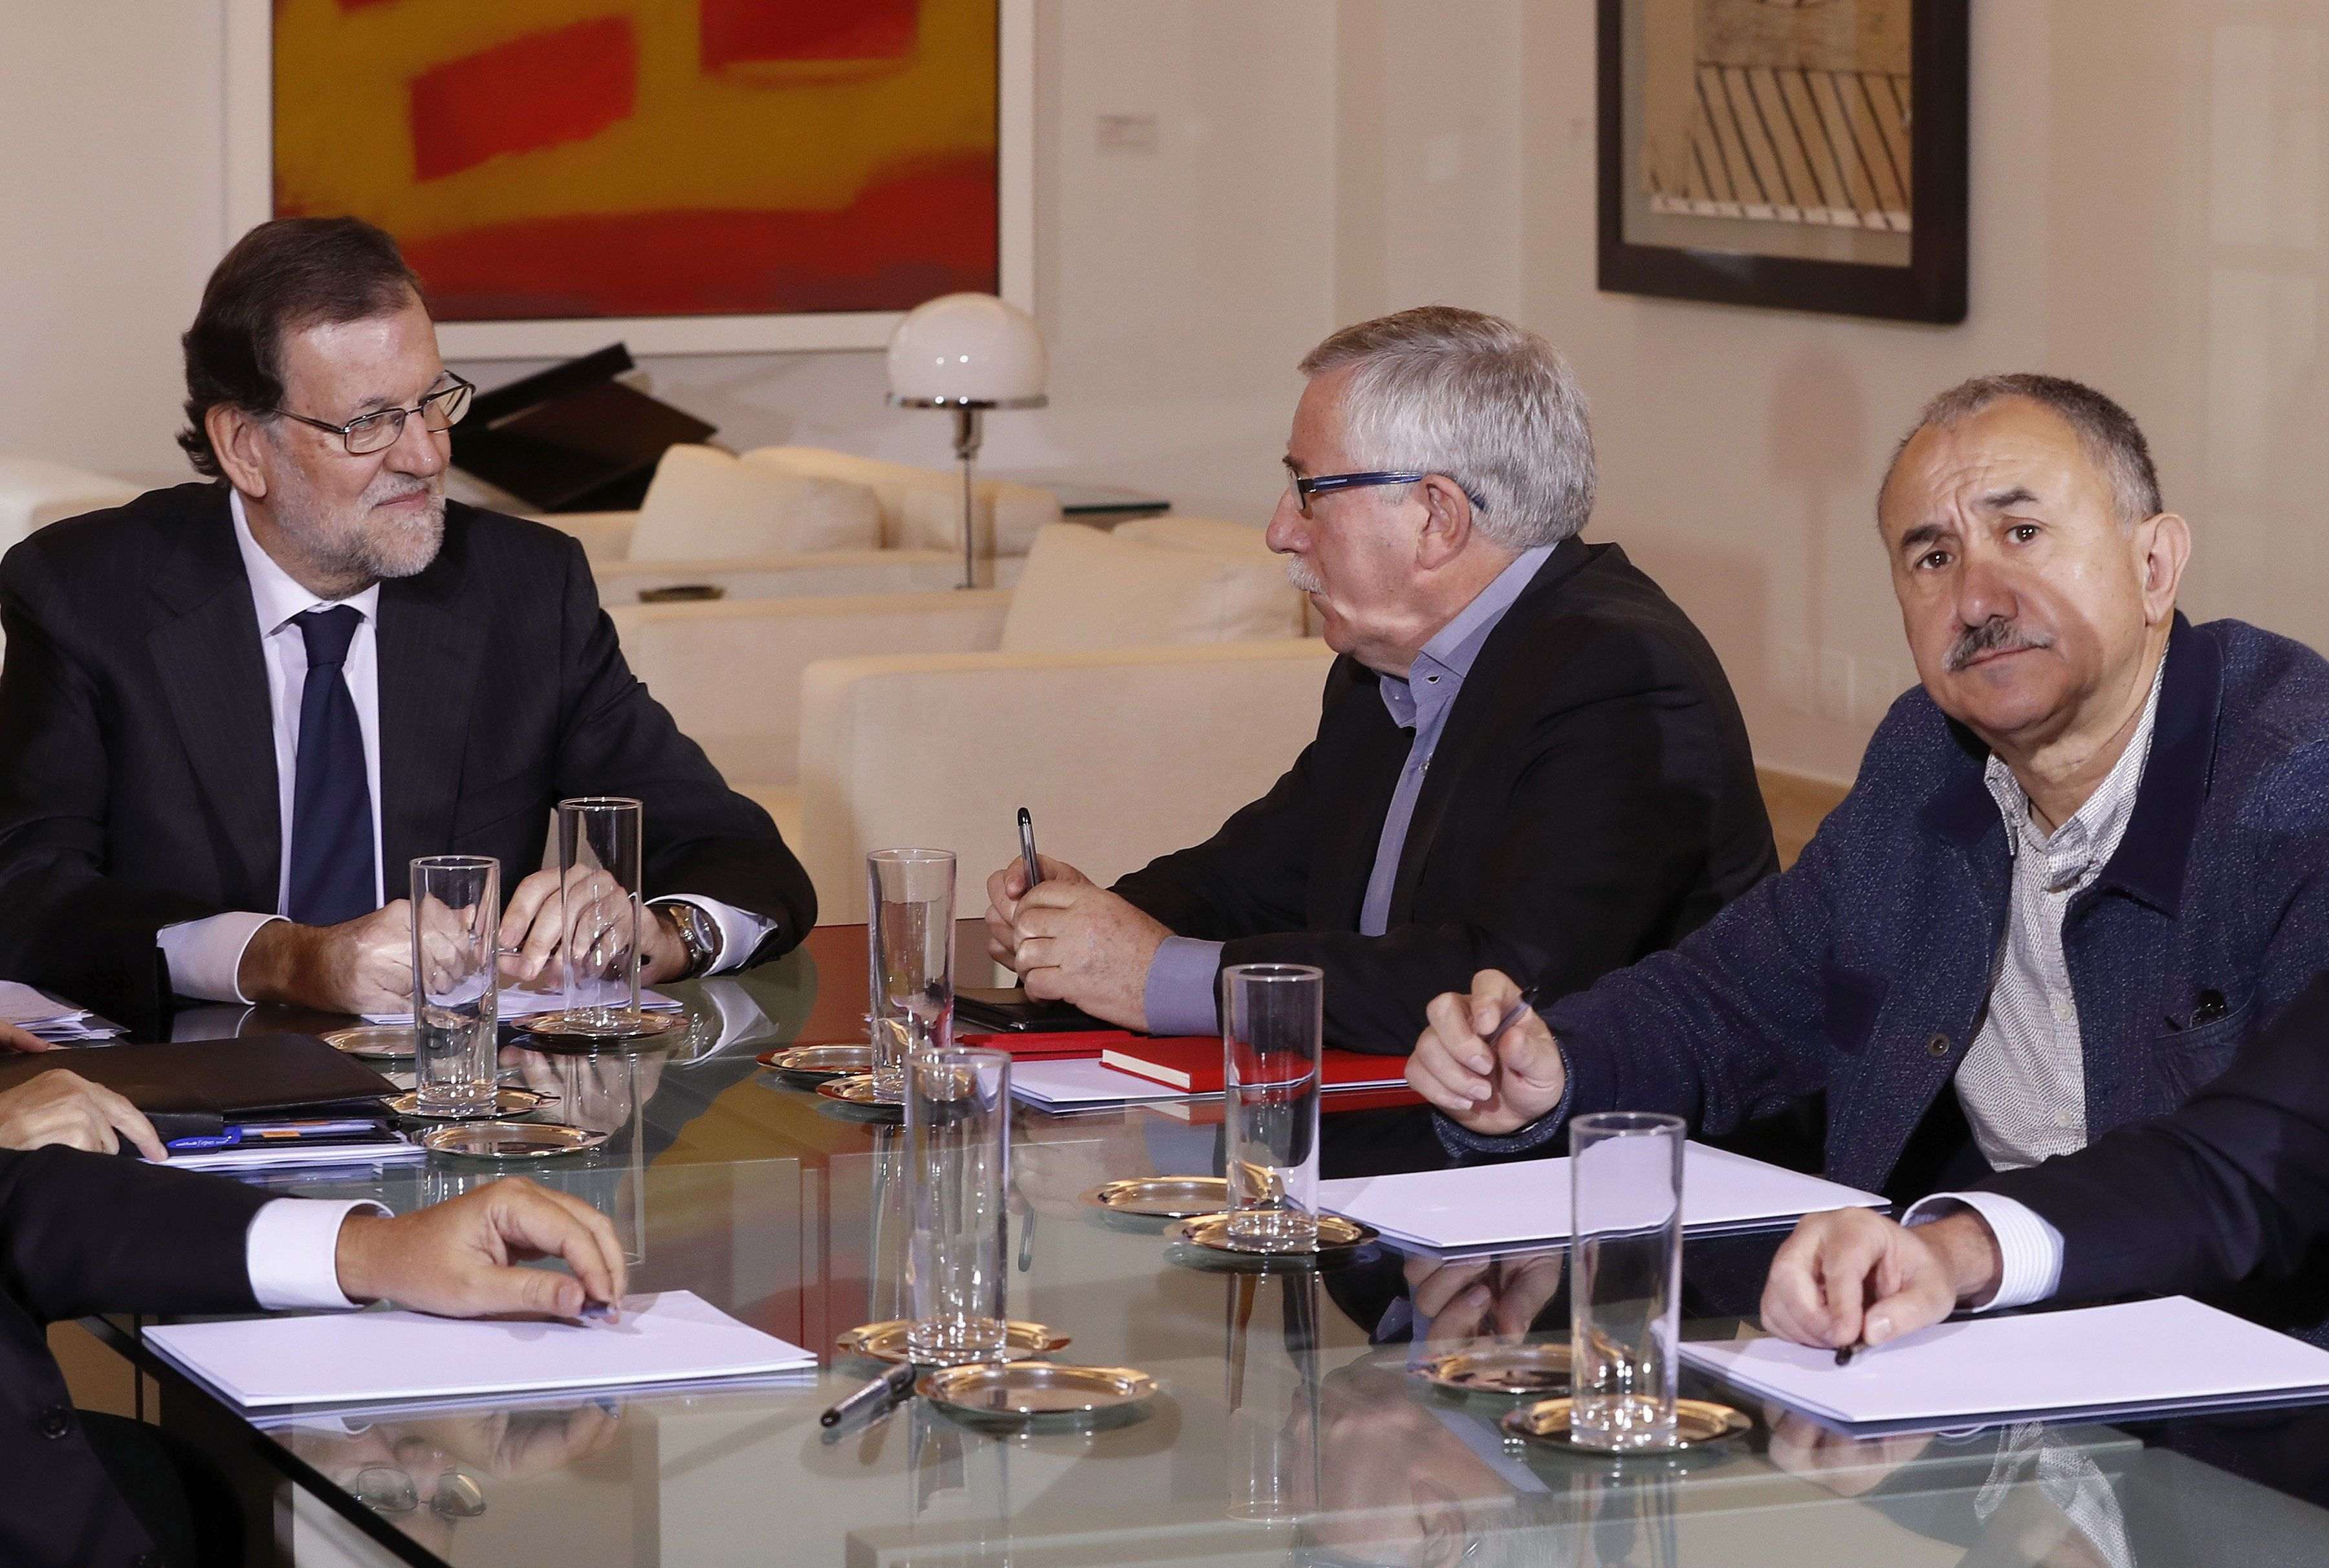 Rajoy posa límits al diàleg social: "no liquidar" les reformes ni incomplir el dèficit